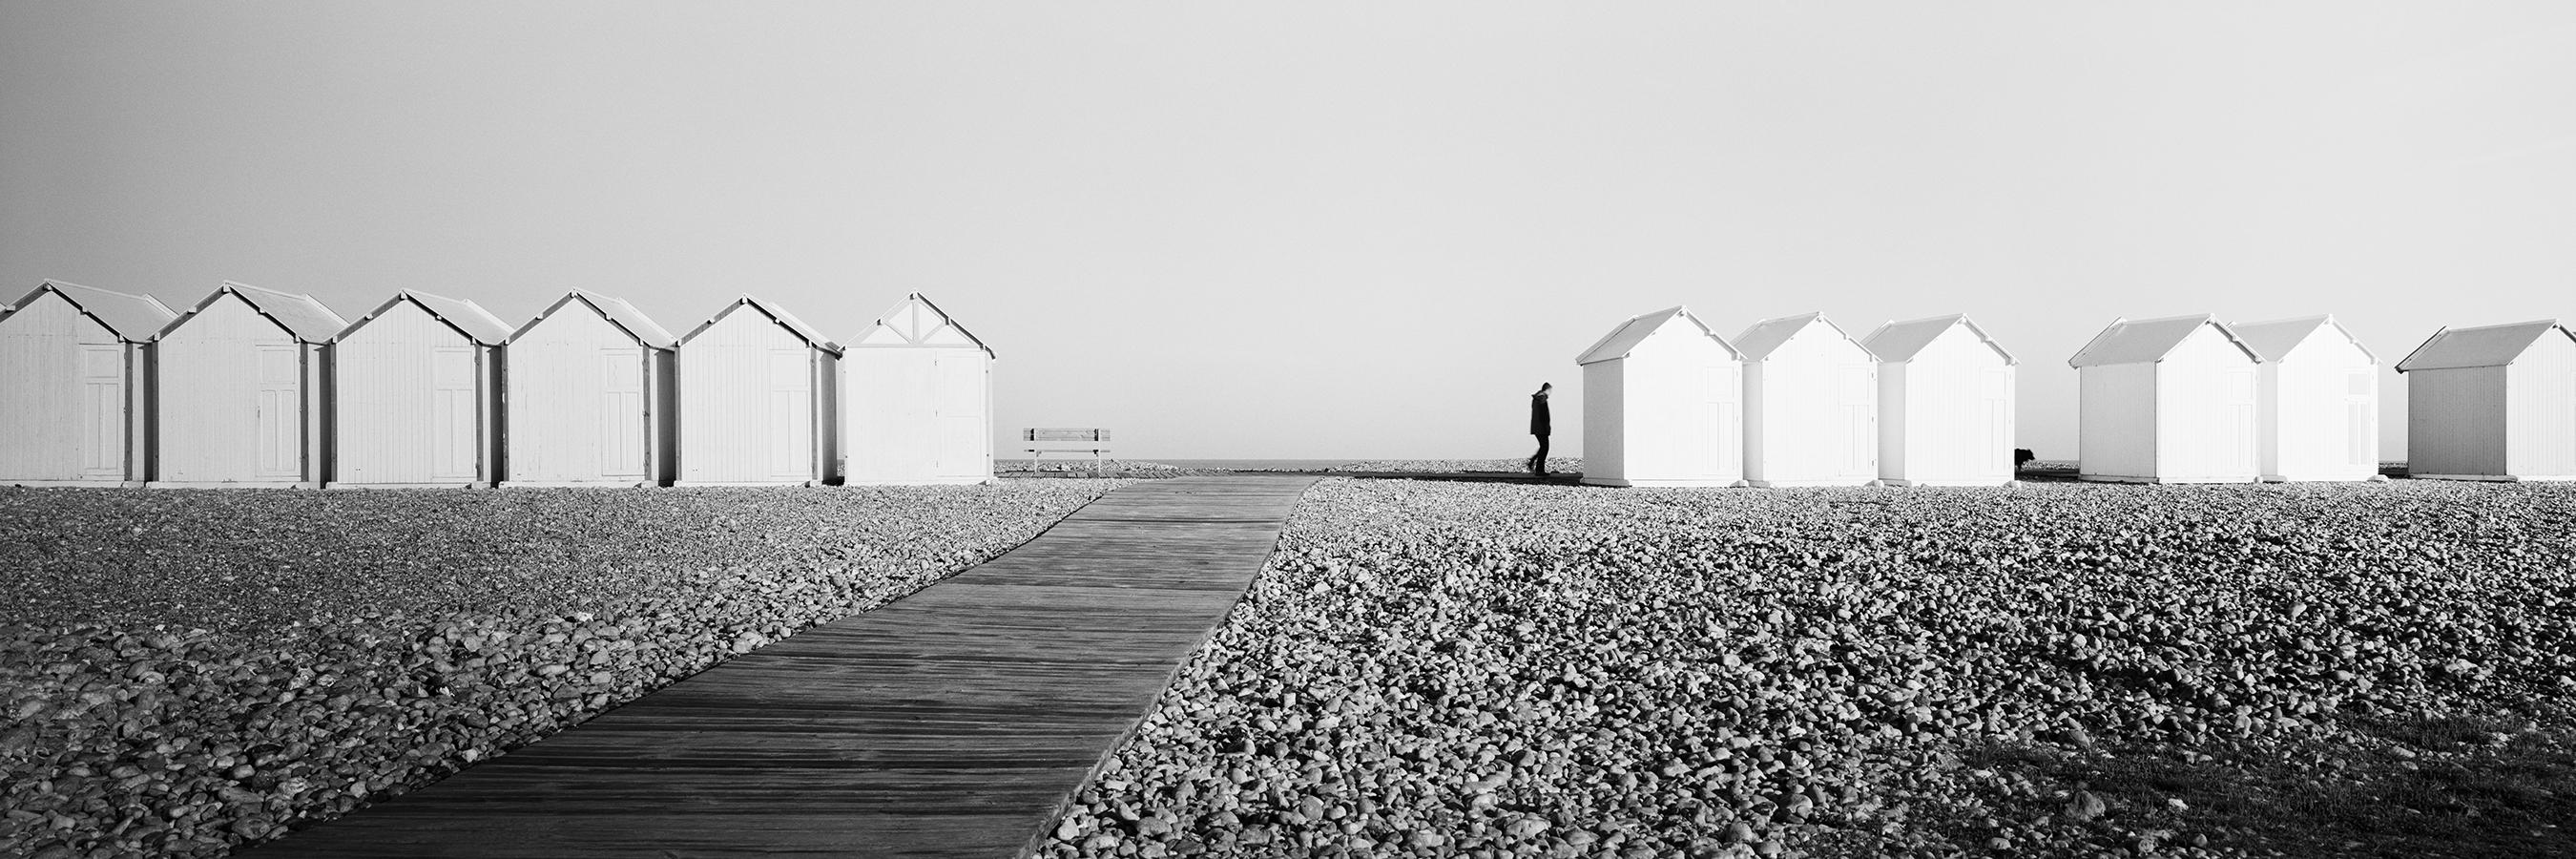 Black and White Photograph Gerald Berghammer - Panorama des cabanes de plage, plage rocheuse, photographie d'art en noir et blanc